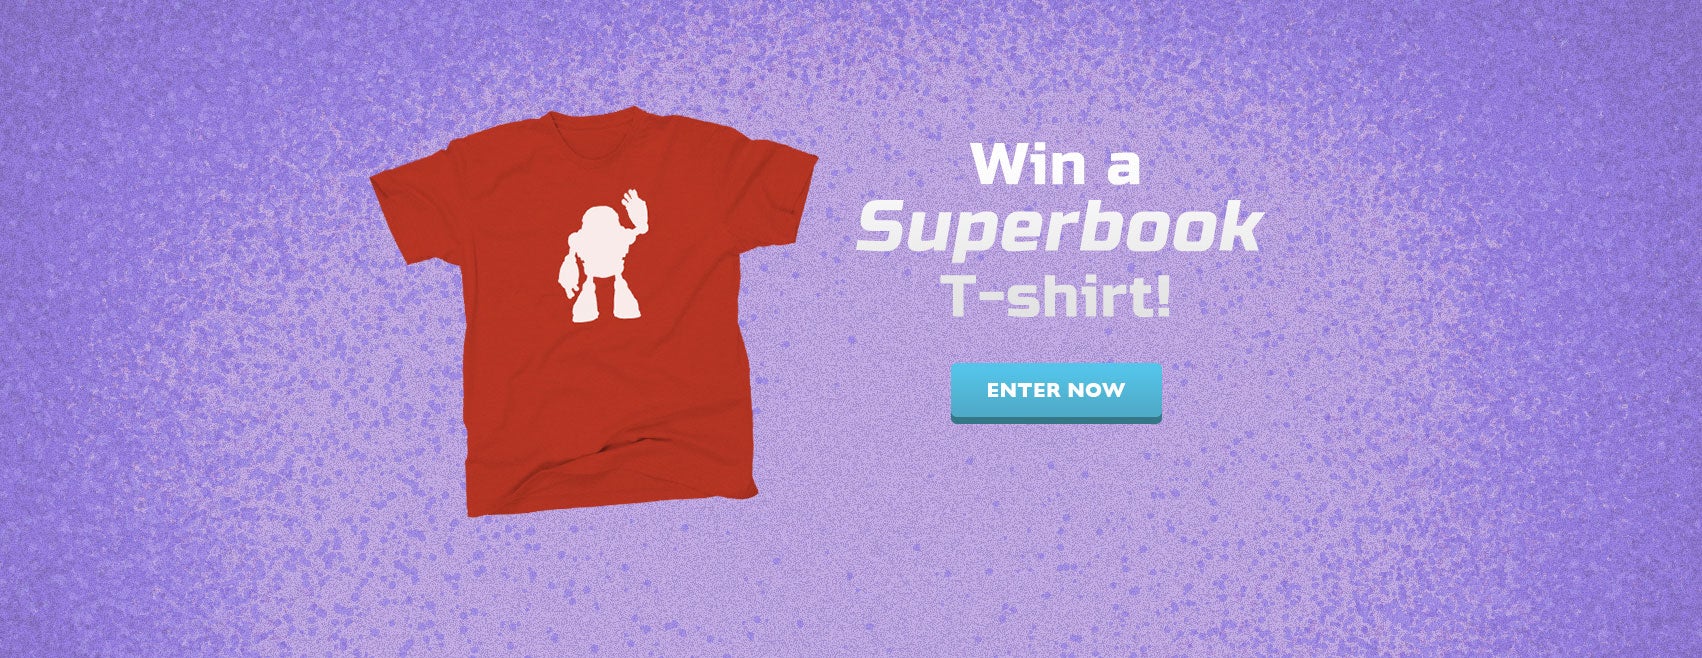 Win a Superbook T-shirt!